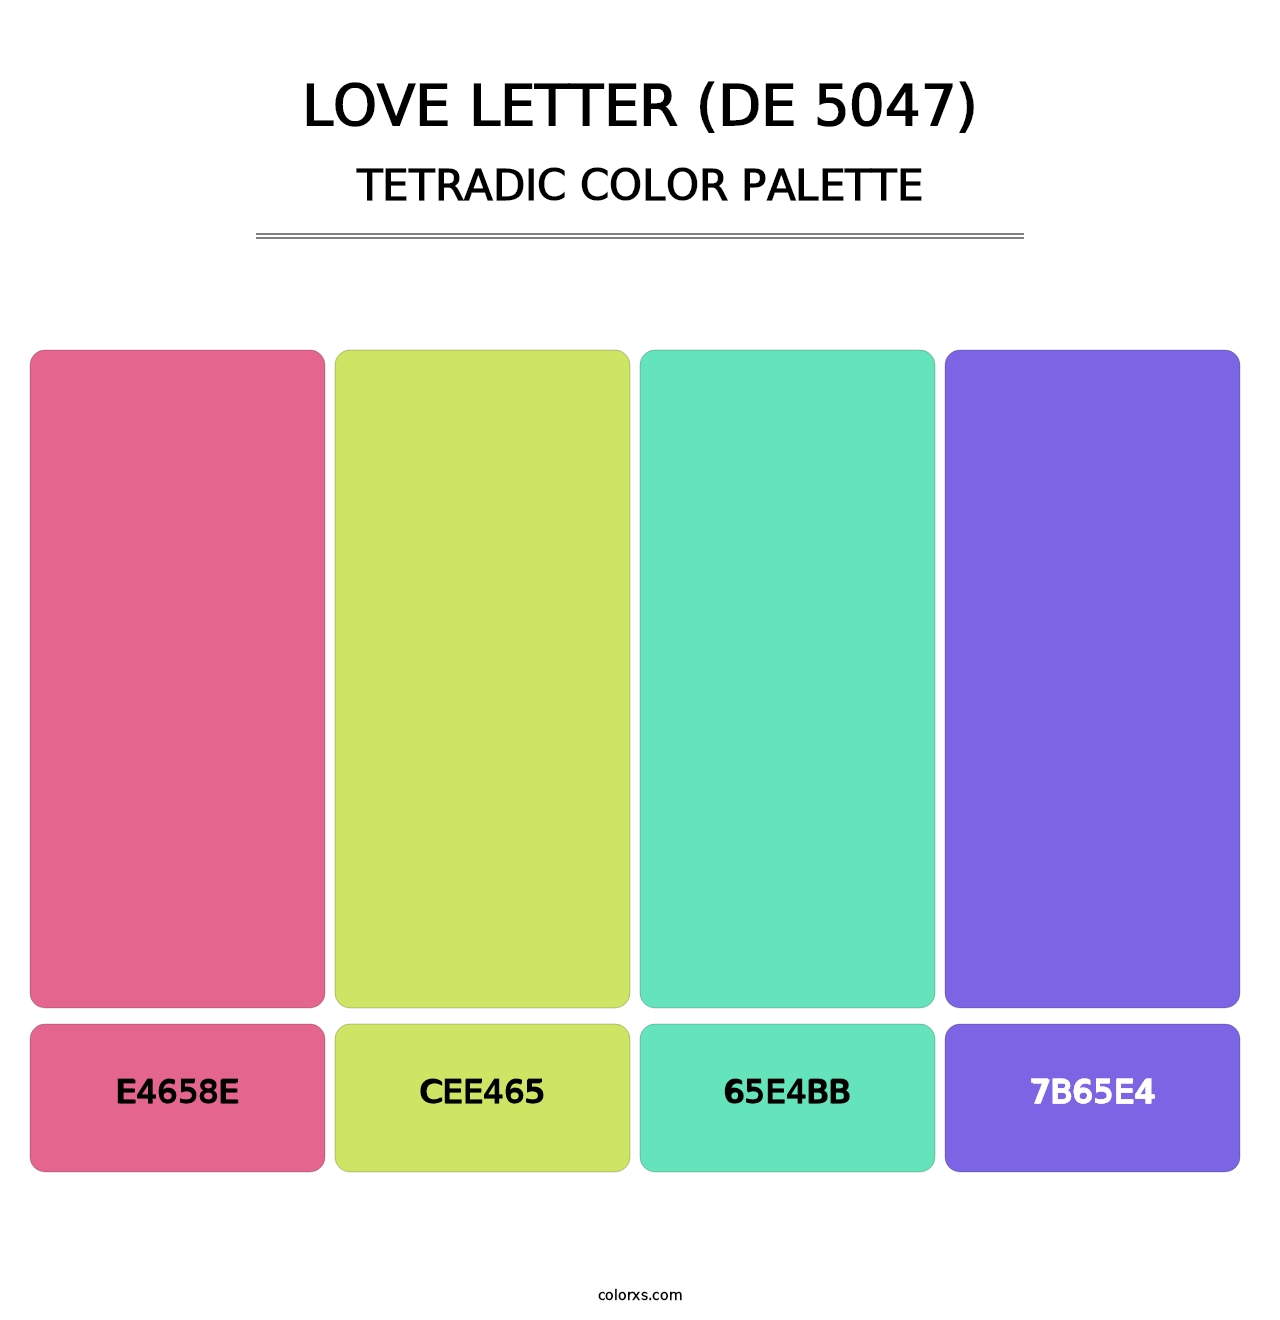 Love Letter (DE 5047) - Tetradic Color Palette